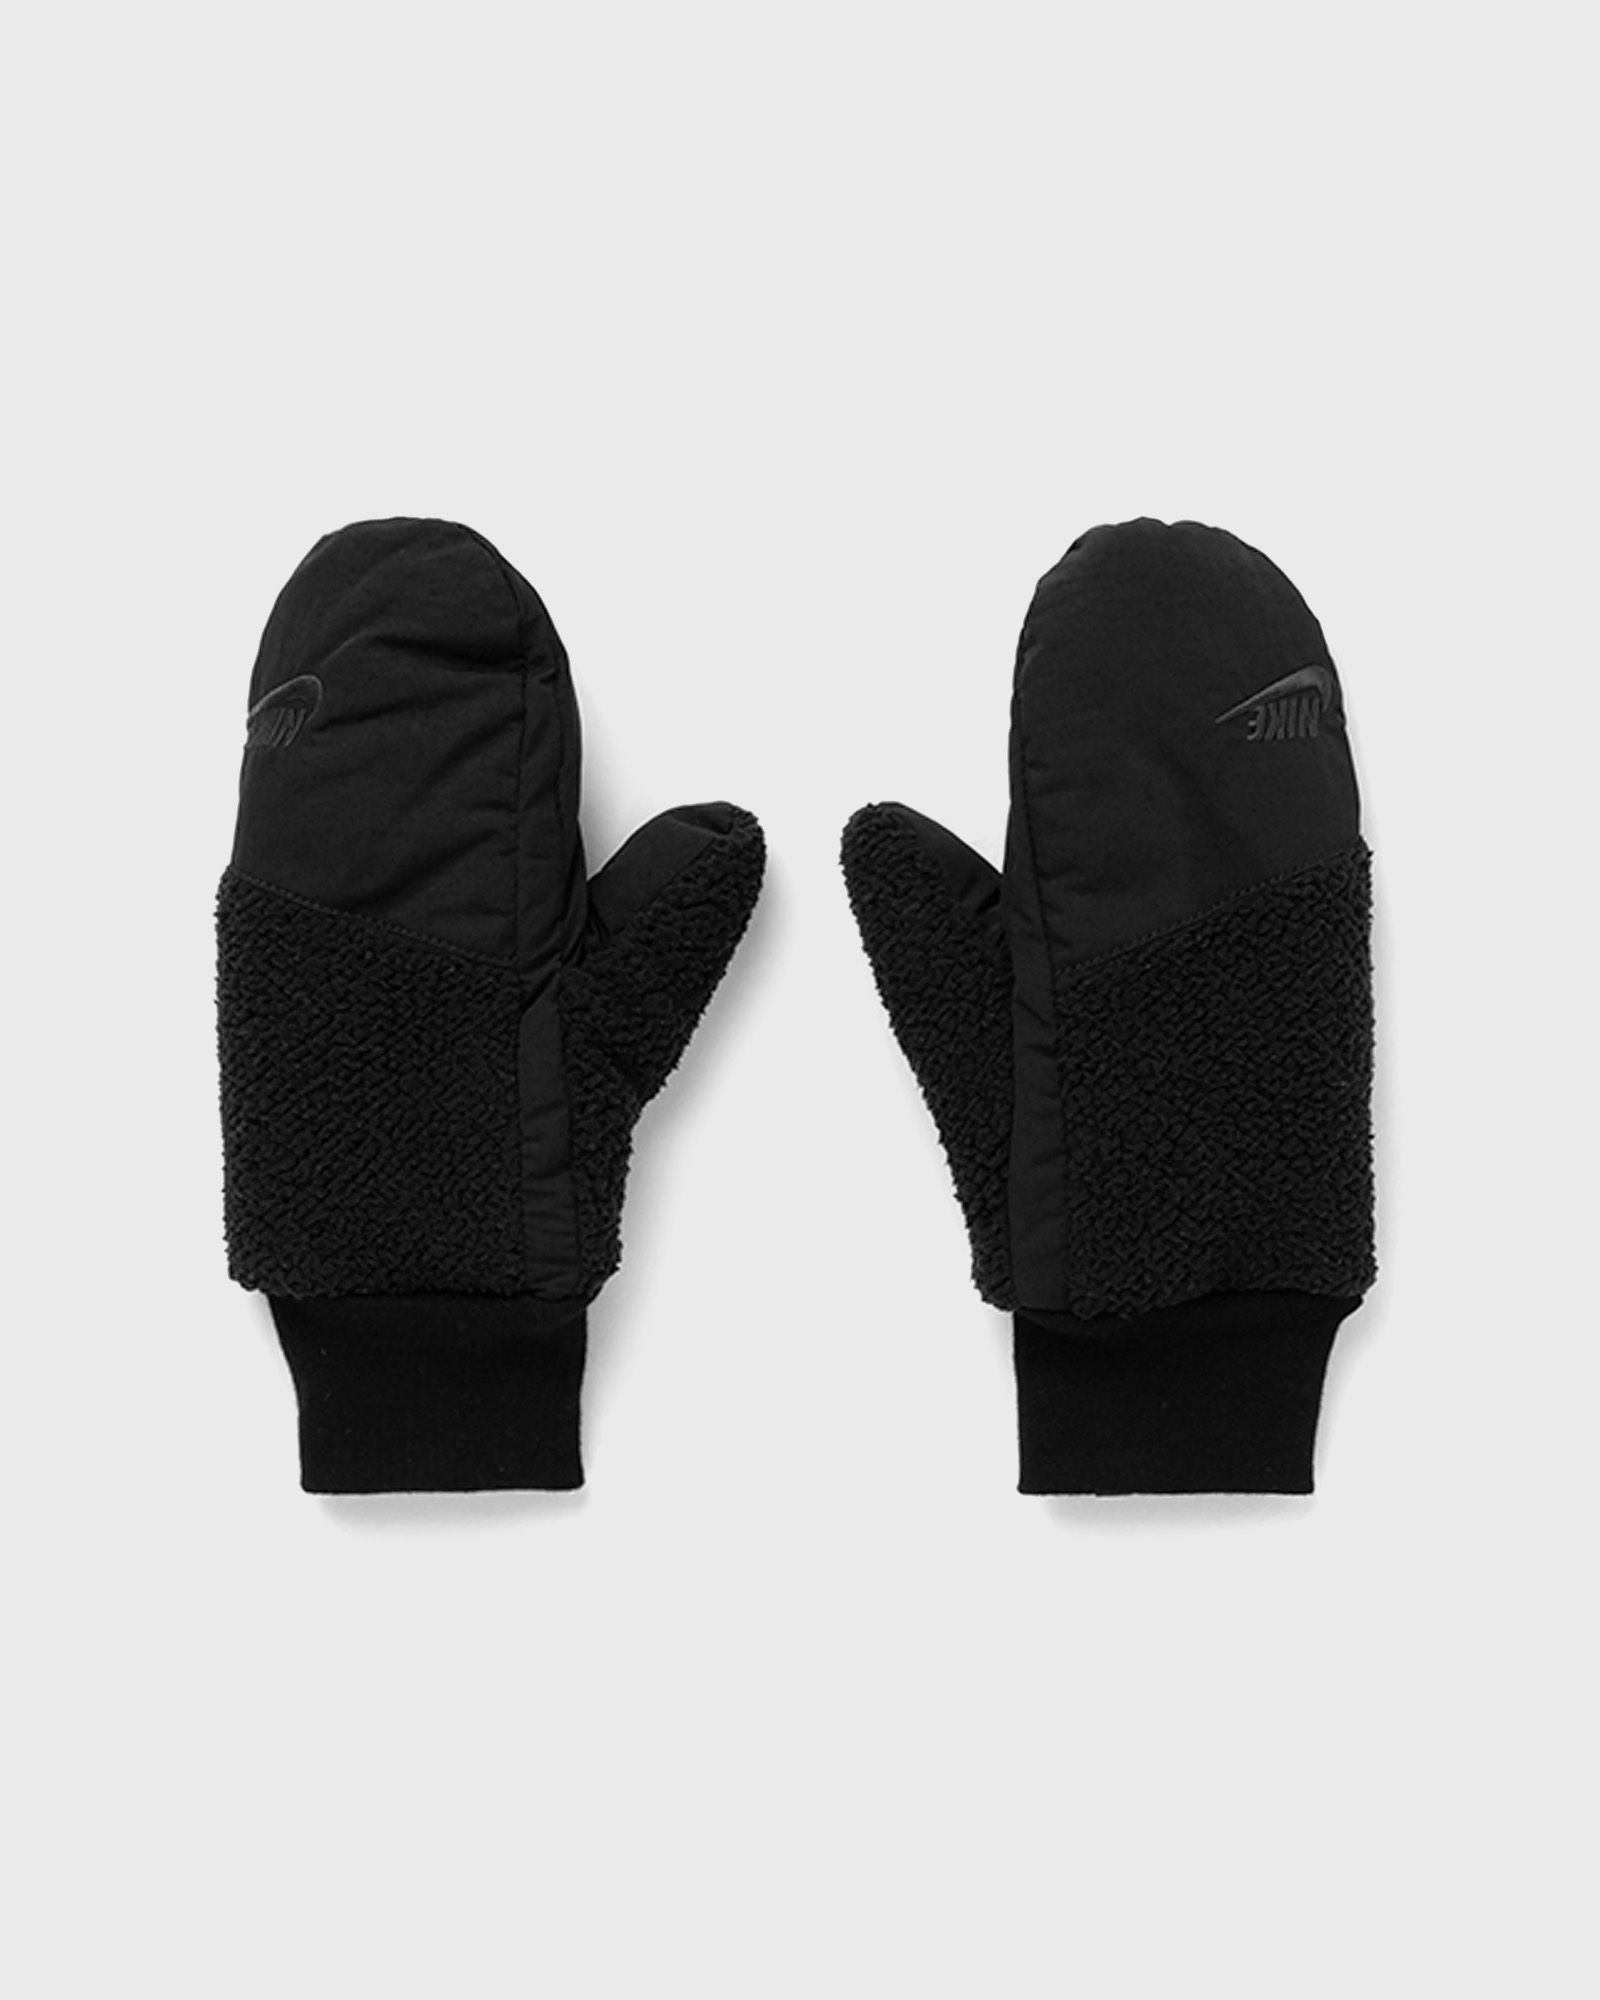 Nike - women mitten sherpa gloves women gloves black in größe:m/l